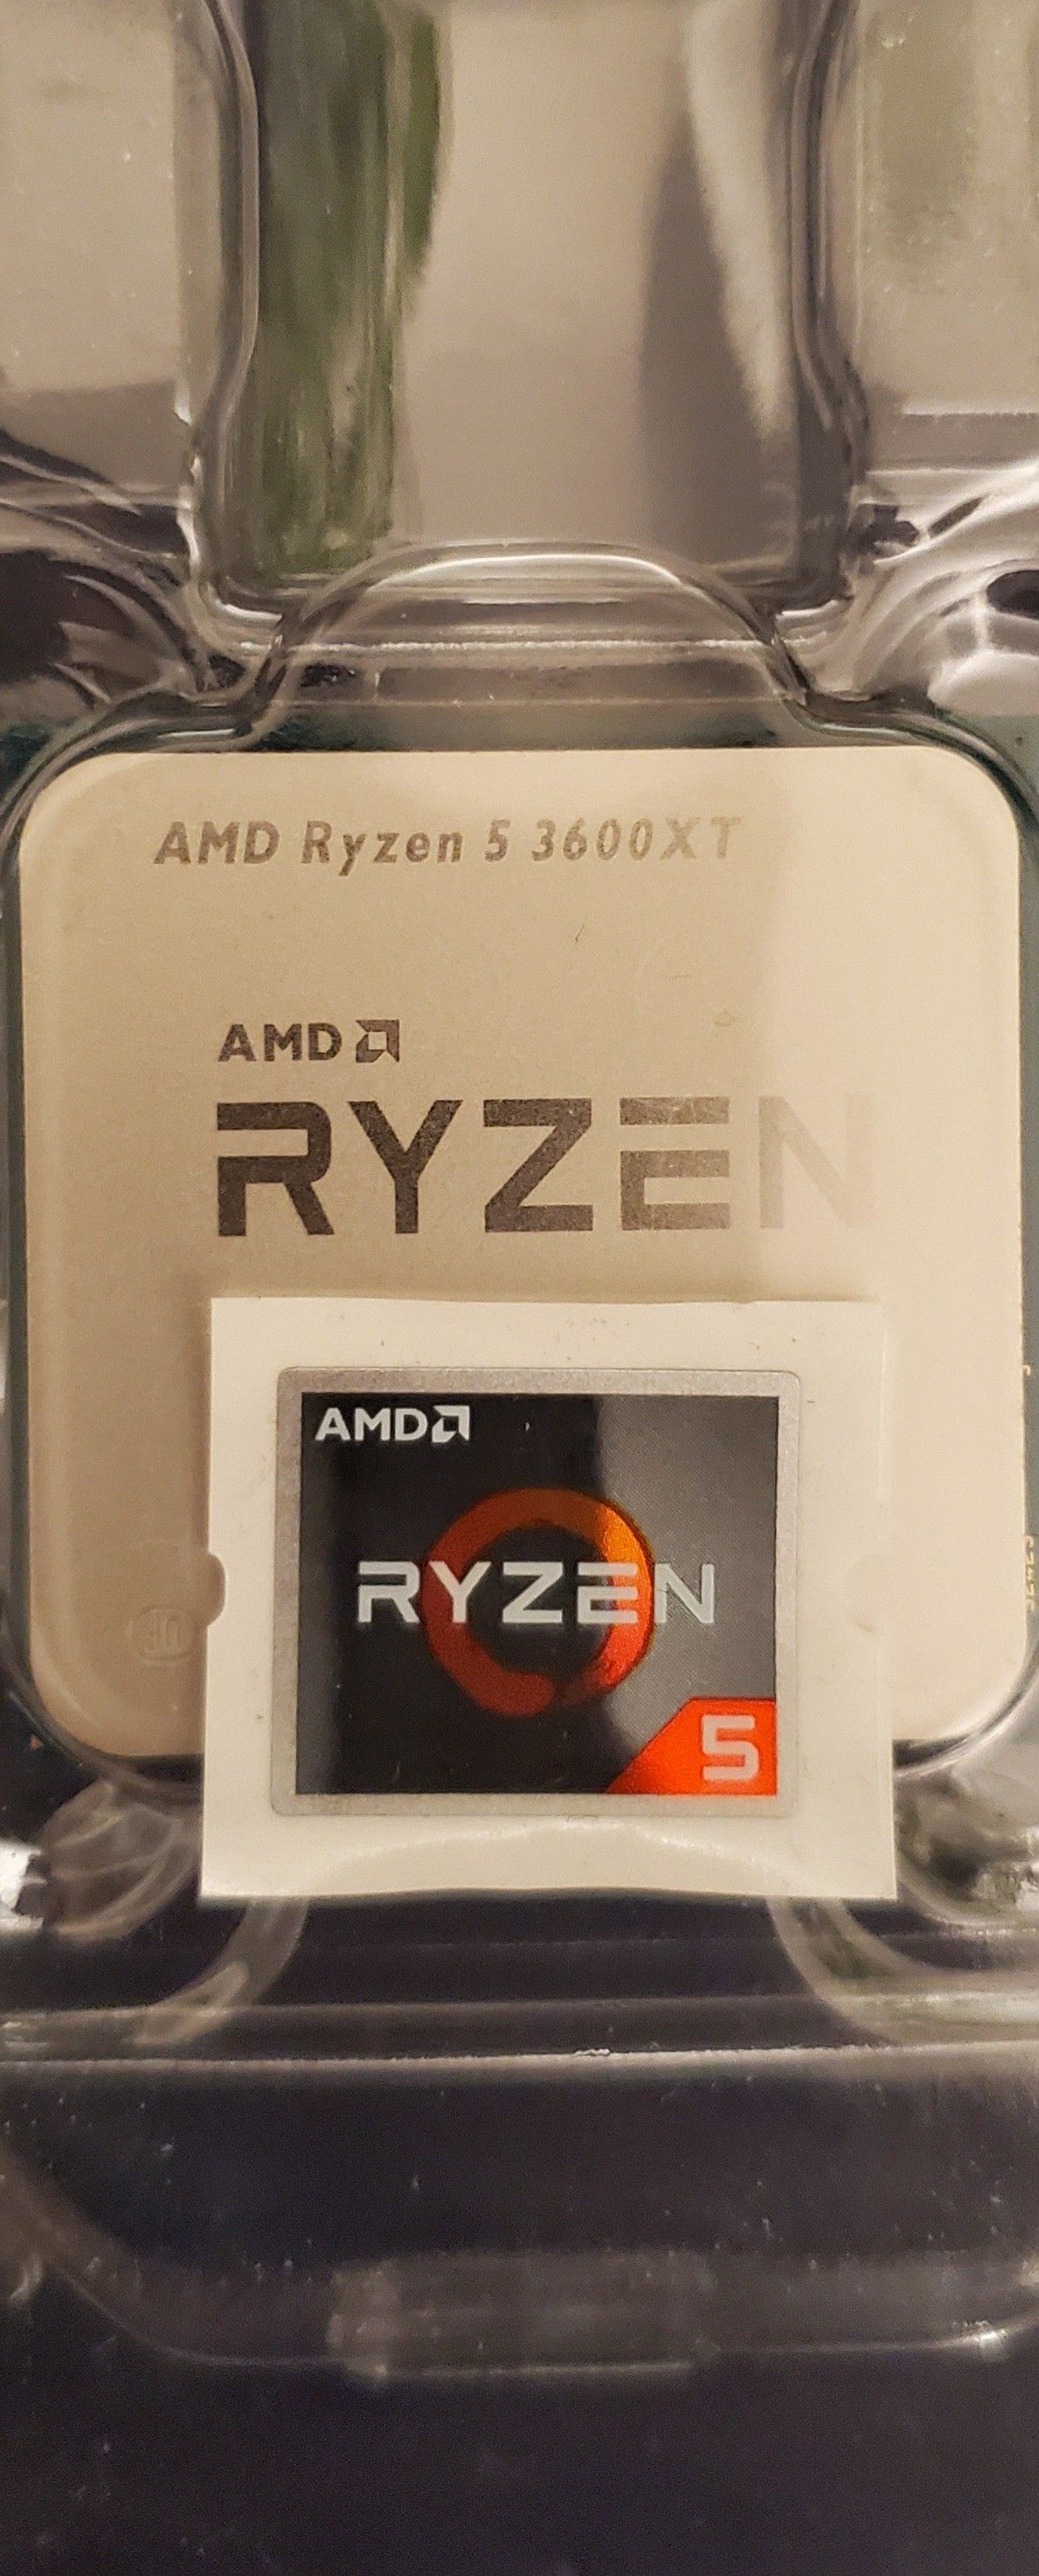 RYZEN 5 AMD AM4 3600XT 4.5GHZ DESKTOP CPU PROCESSOR